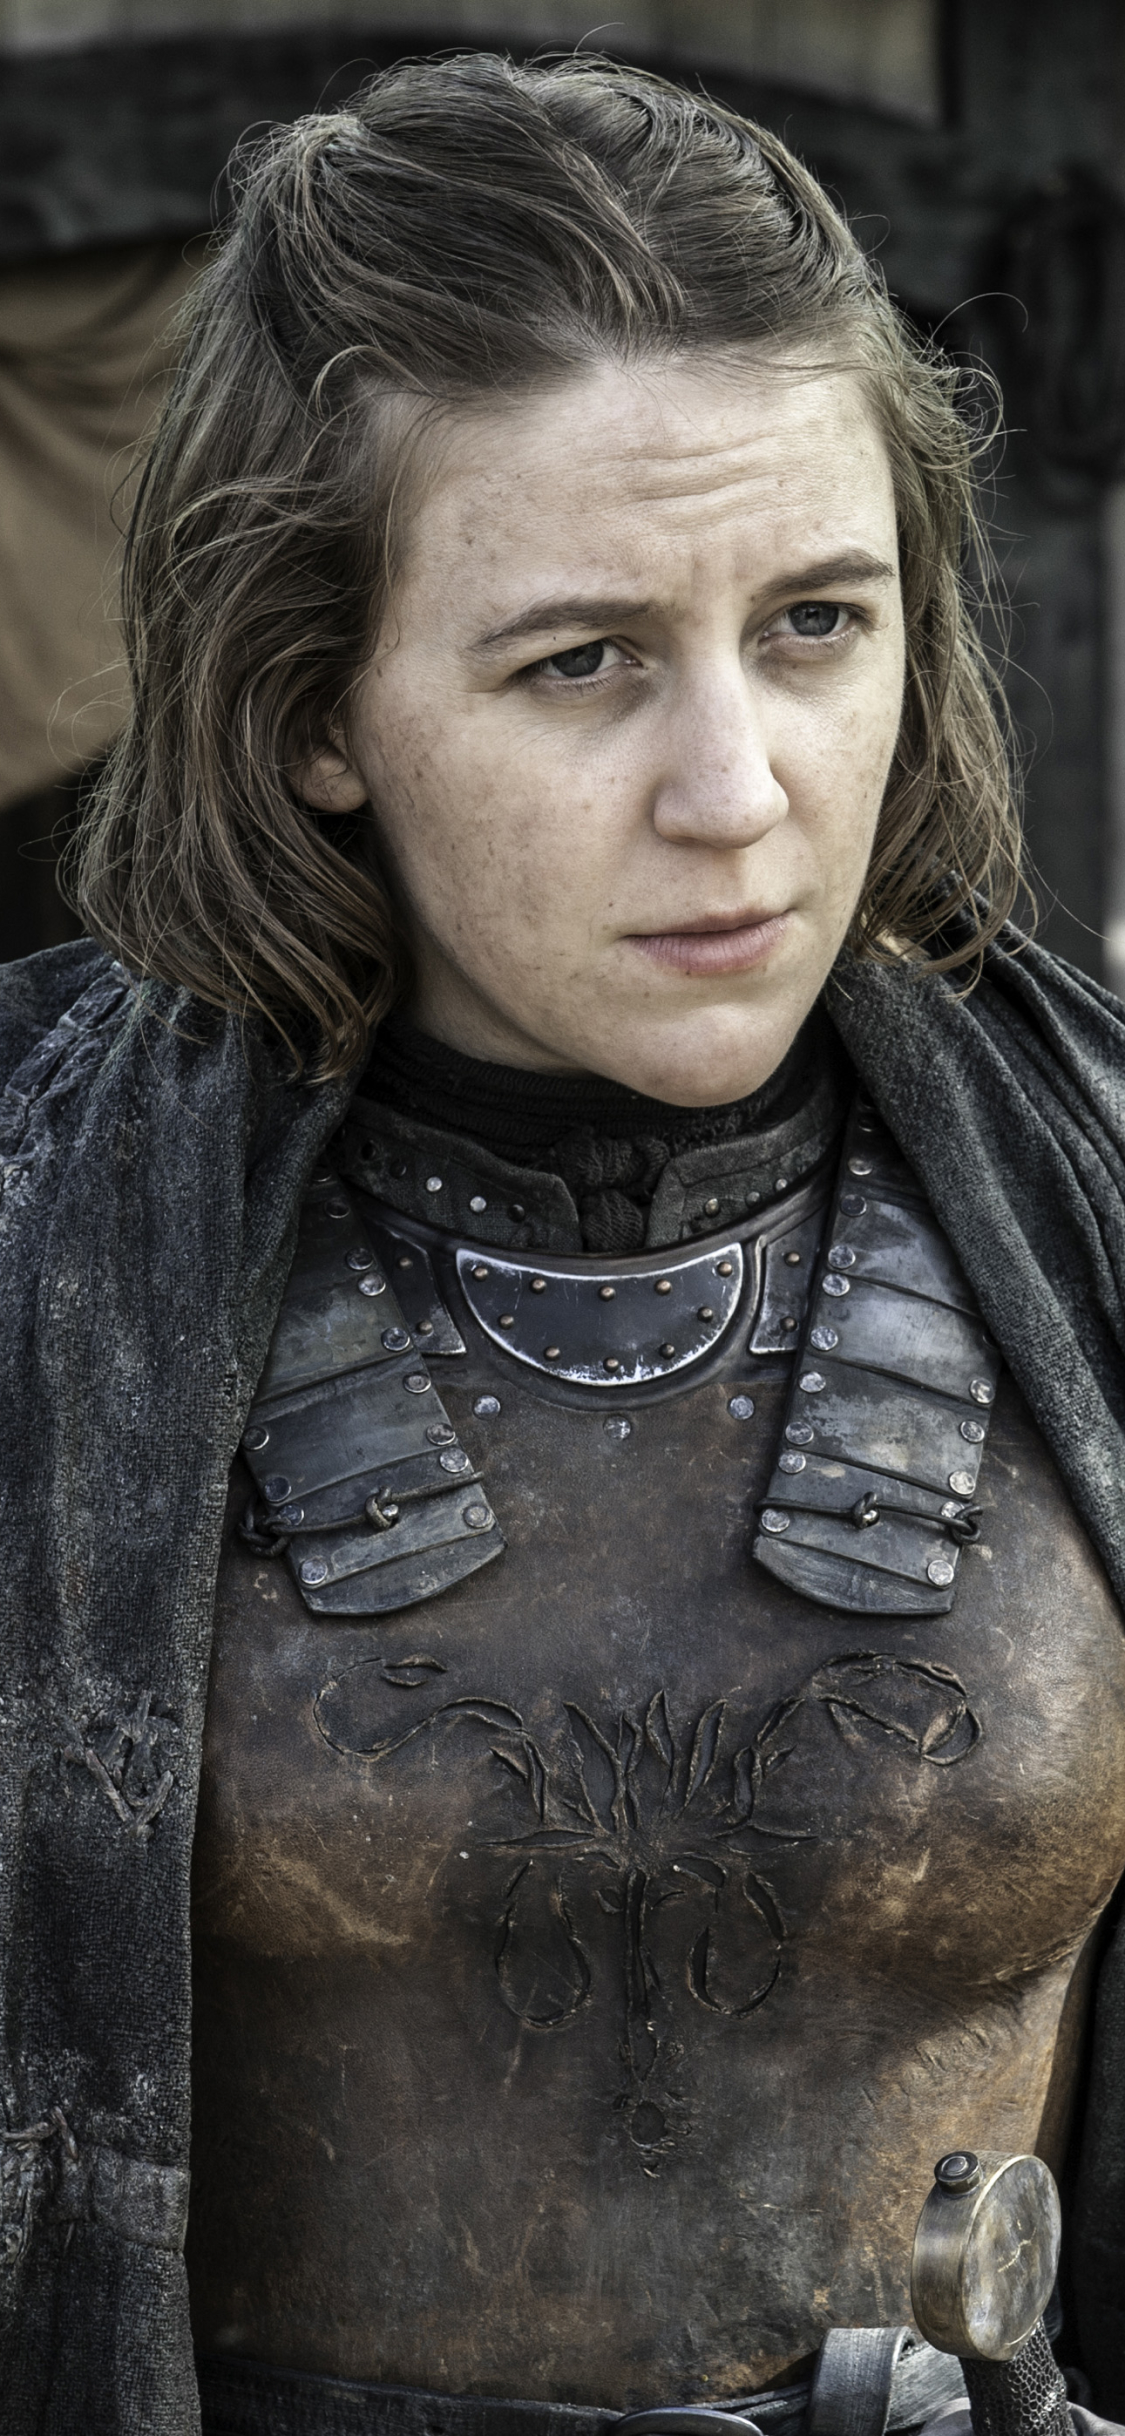 Download mobile wallpaper Game Of Thrones, Tv Show, Yara Greyjoy, Gemma Whelan for free.